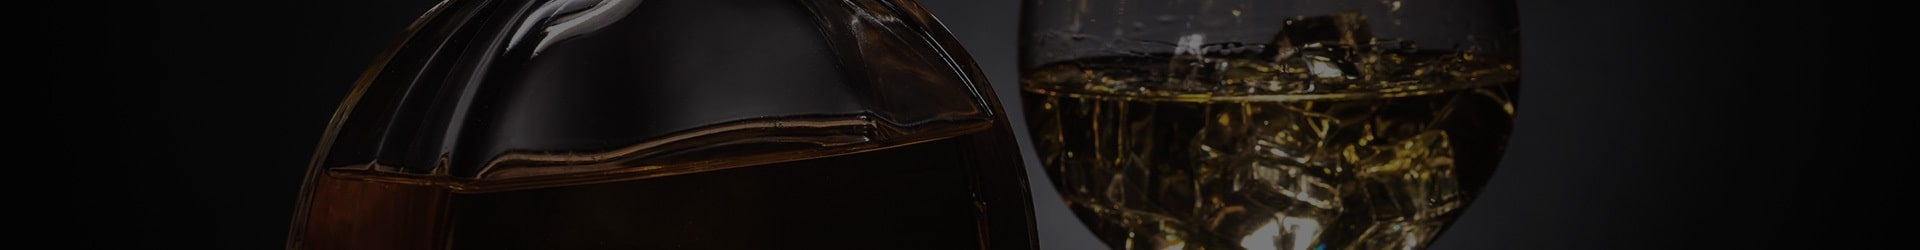 Notre Sélection de Liqueur de Cognac|Magasiner en ligne